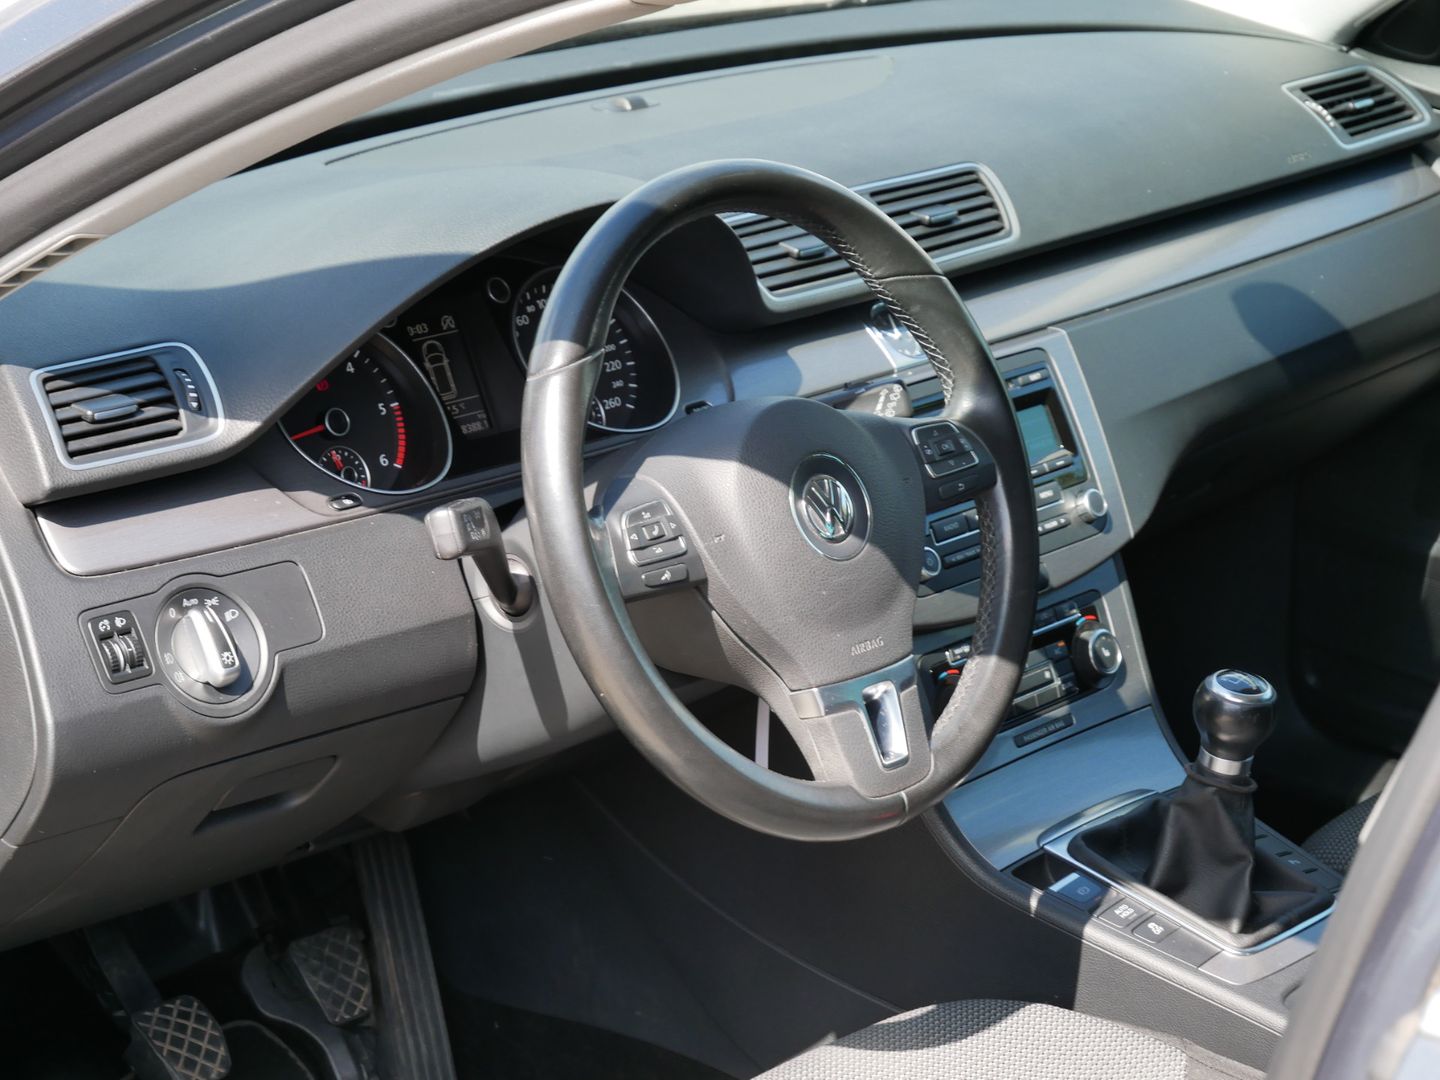 Volkswagen Passat 2.0 TDI 103 kW Comfort